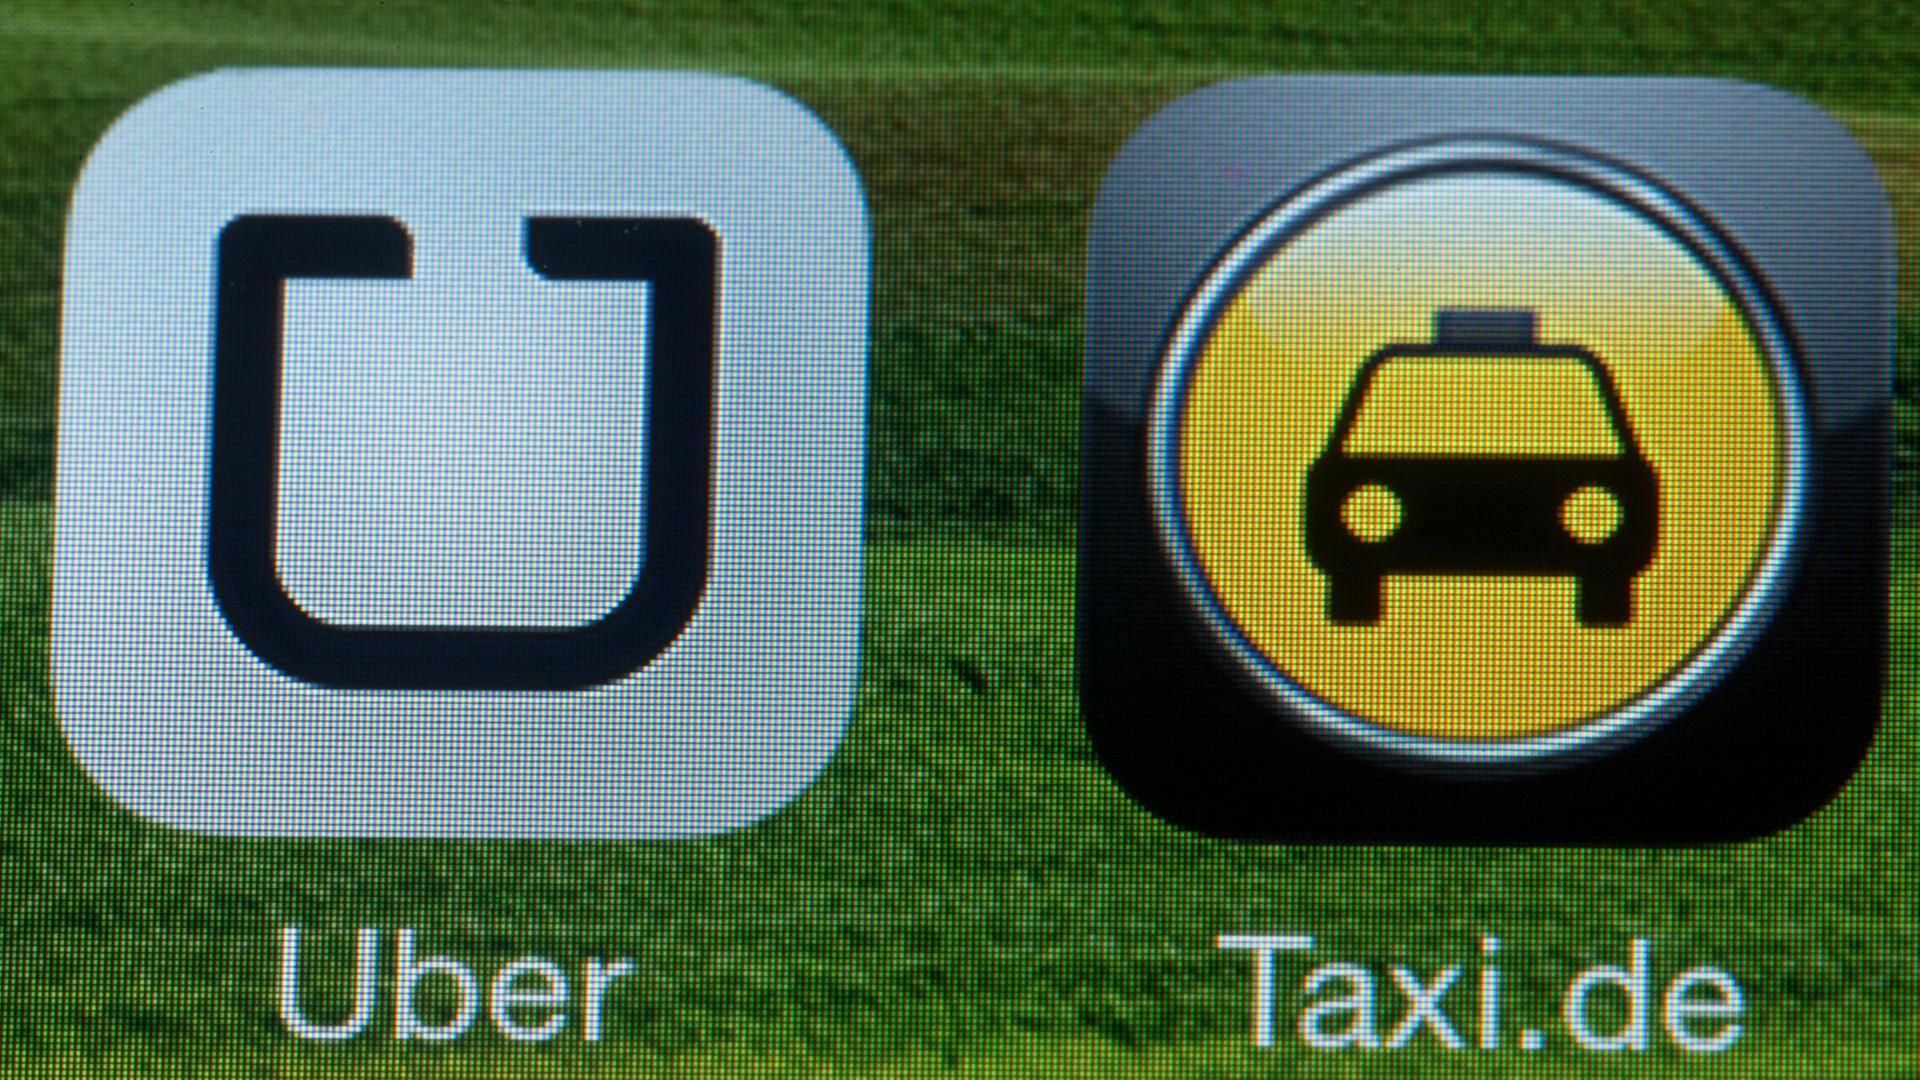 Die Handy-App "Uber" auf einem Smartphone neben dem Logo der Taxi-Vermittlung, Aufnahme vom September 2014